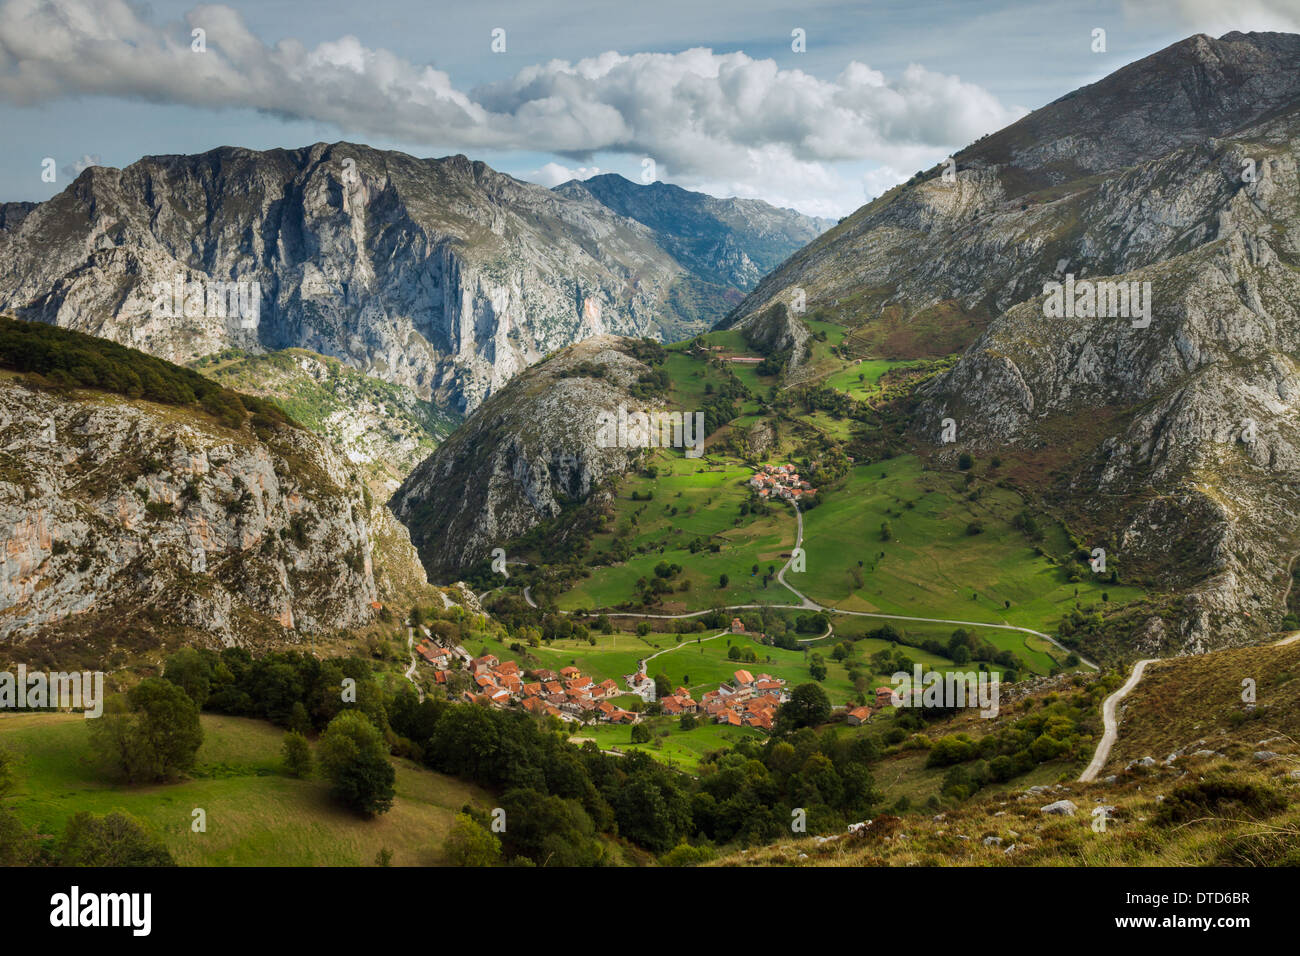 Aldea de montaña de Beges (Bejes), Cantabria, al norte de España. Parque Nacional de los Picos de Europa. Foto de stock